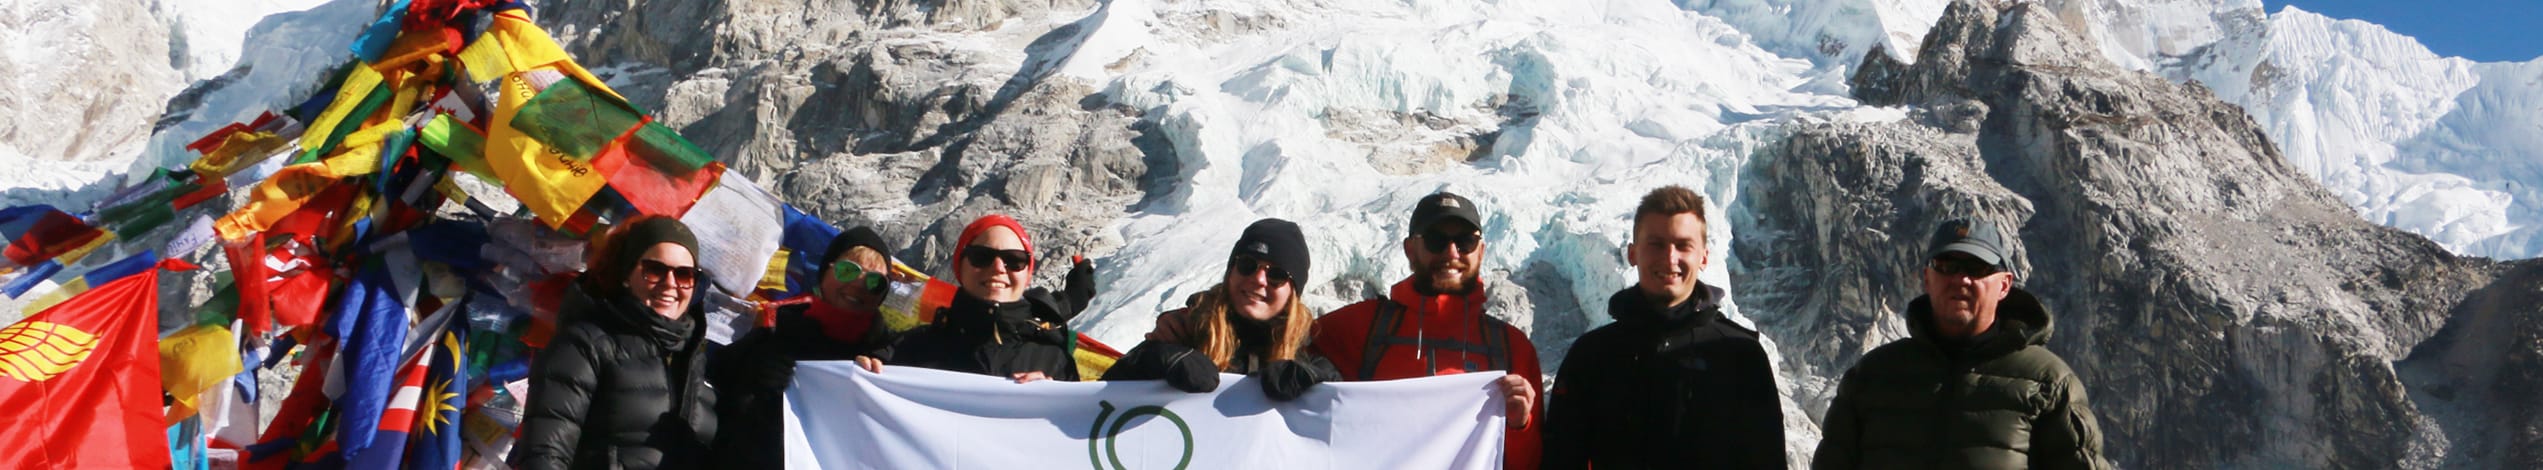 Everest base camp med dansk rejseleder